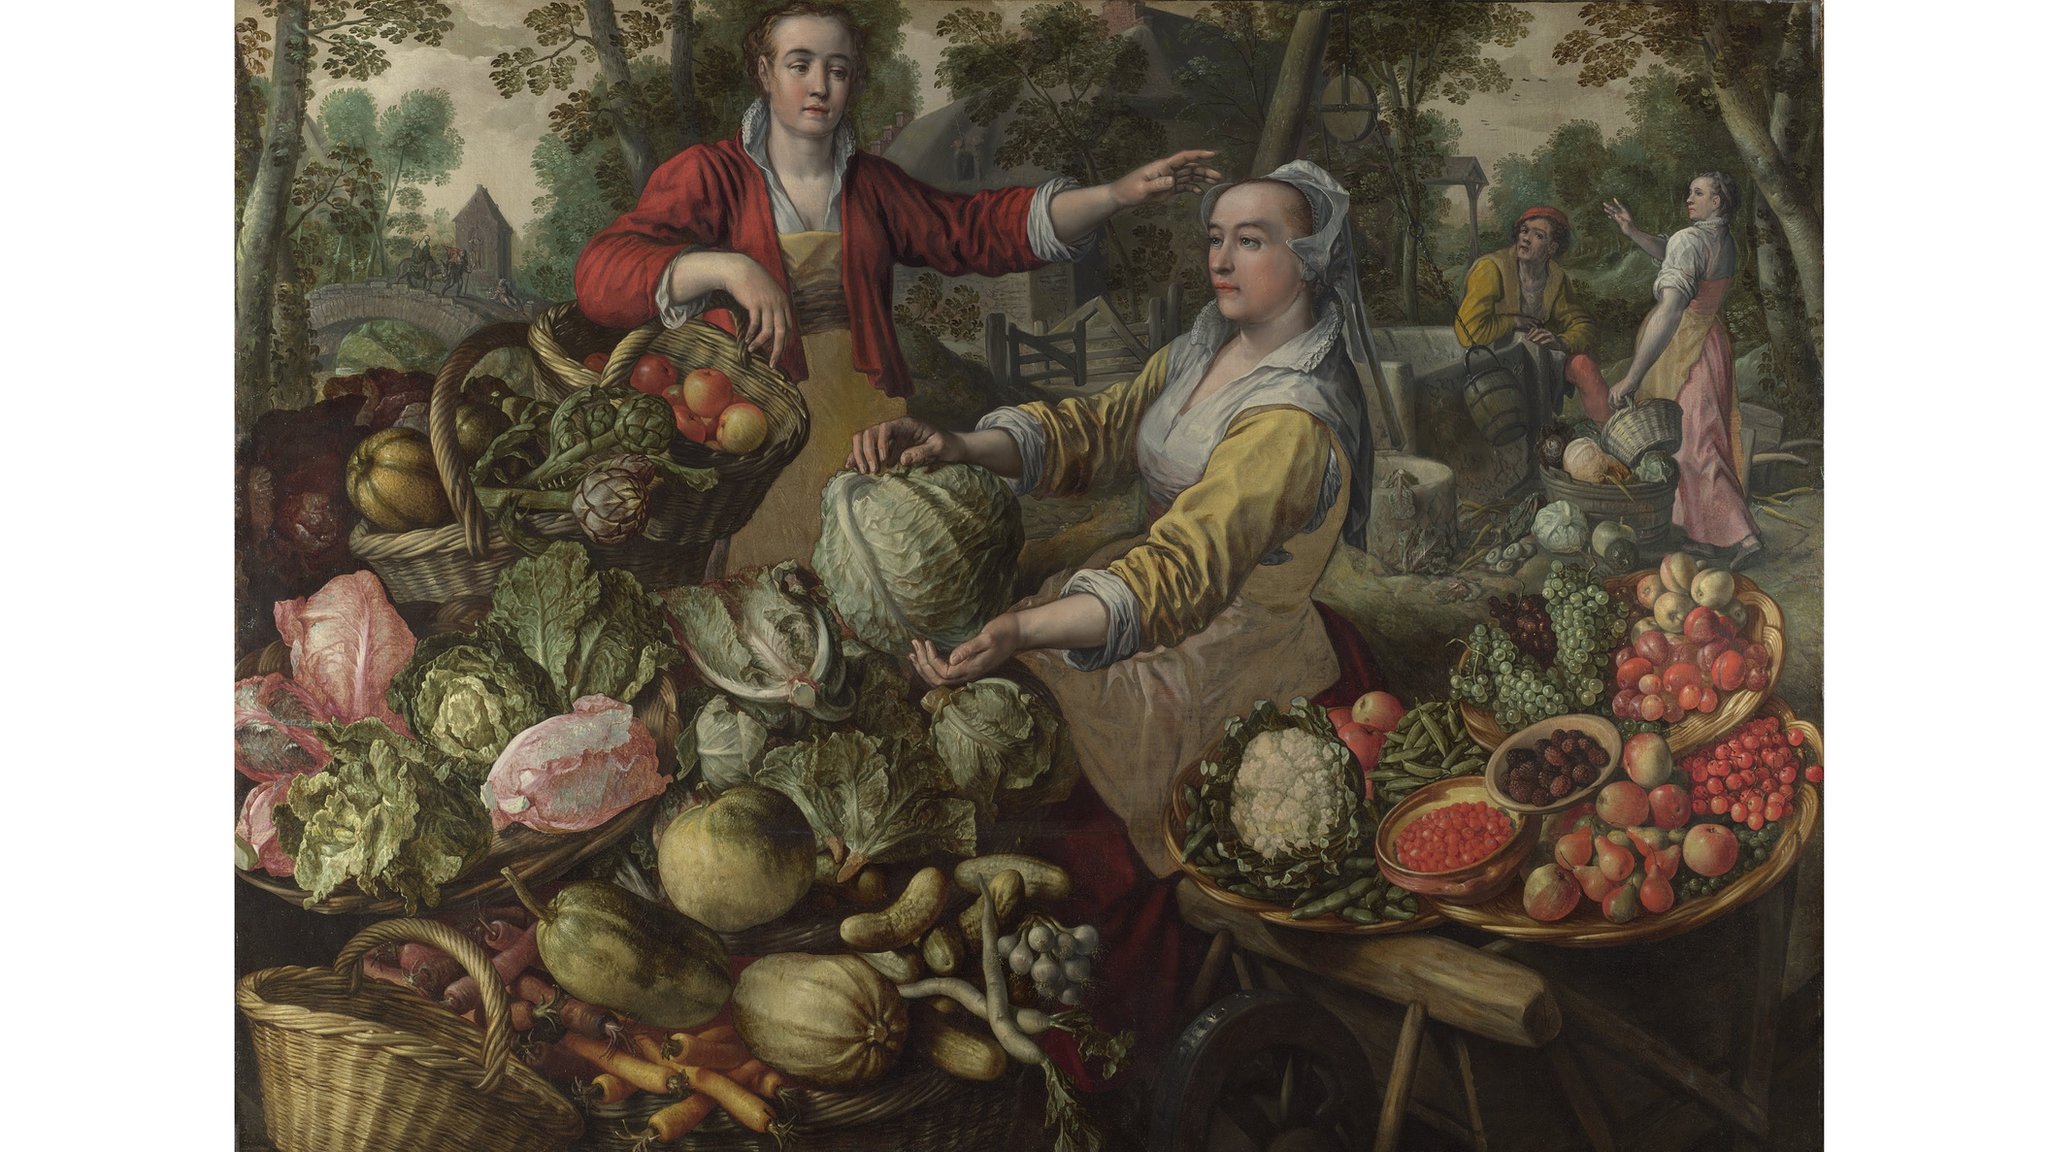 A obra 'Os Quatro Elementos - Terra', de Joachim Beuckelaer, mostra uma cena de duas mulheres cercadas por vegetais